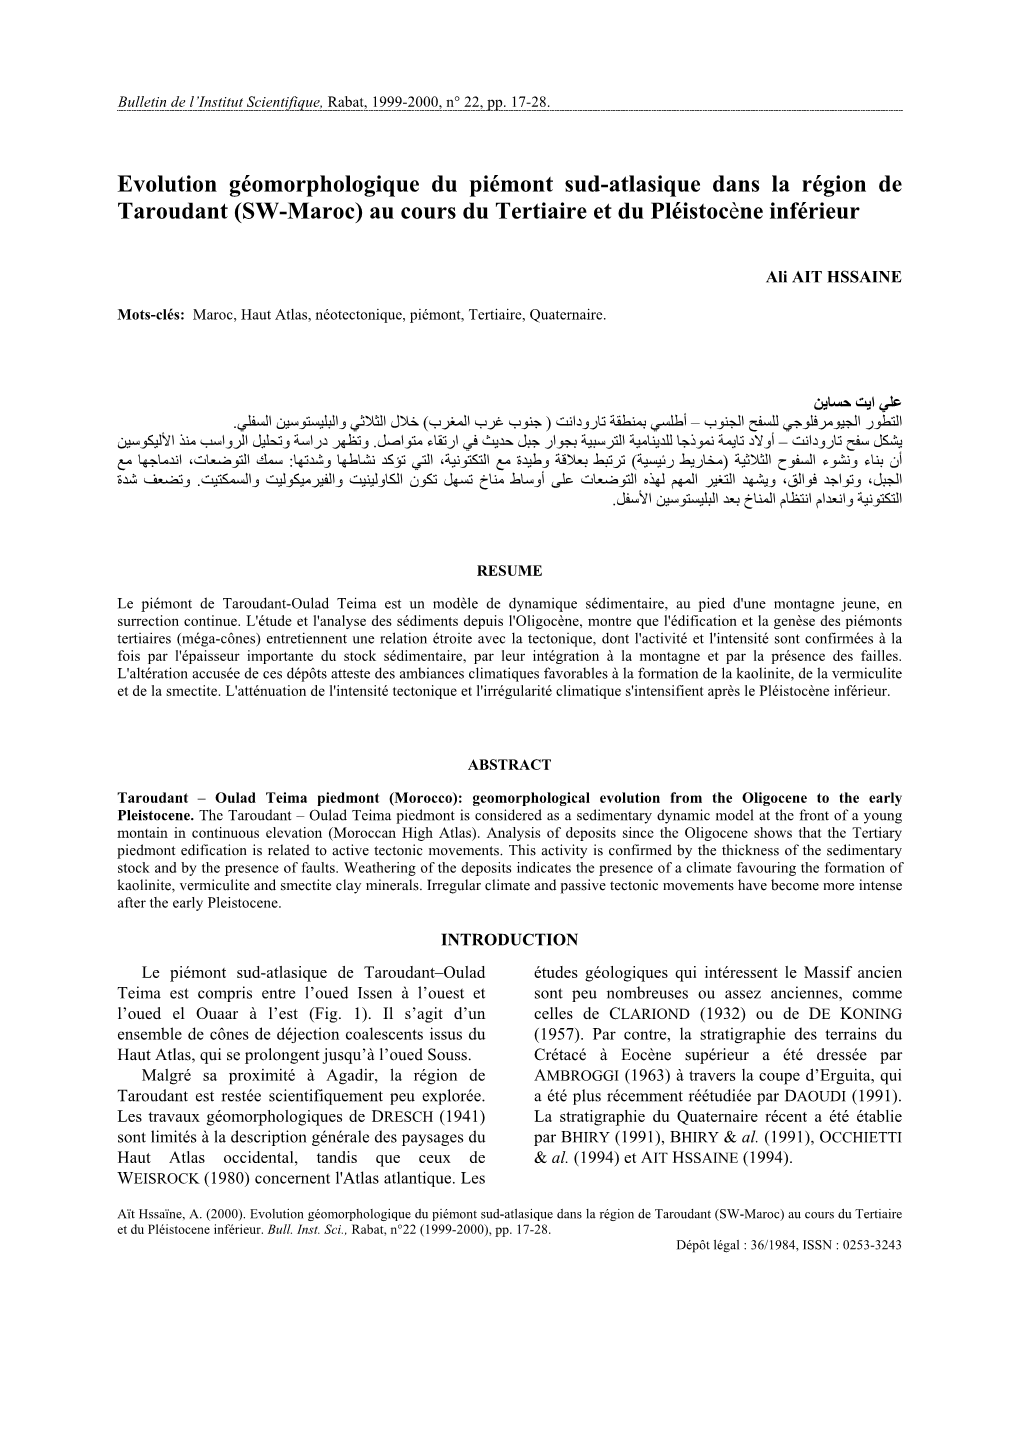 Evolution Géomorphologique Du Piémont Sud-Atlasique Dans La Région De Taroudant (SW-Maroc) Au Cours Du Tertiaire Et Du Pléistocène Inférieur